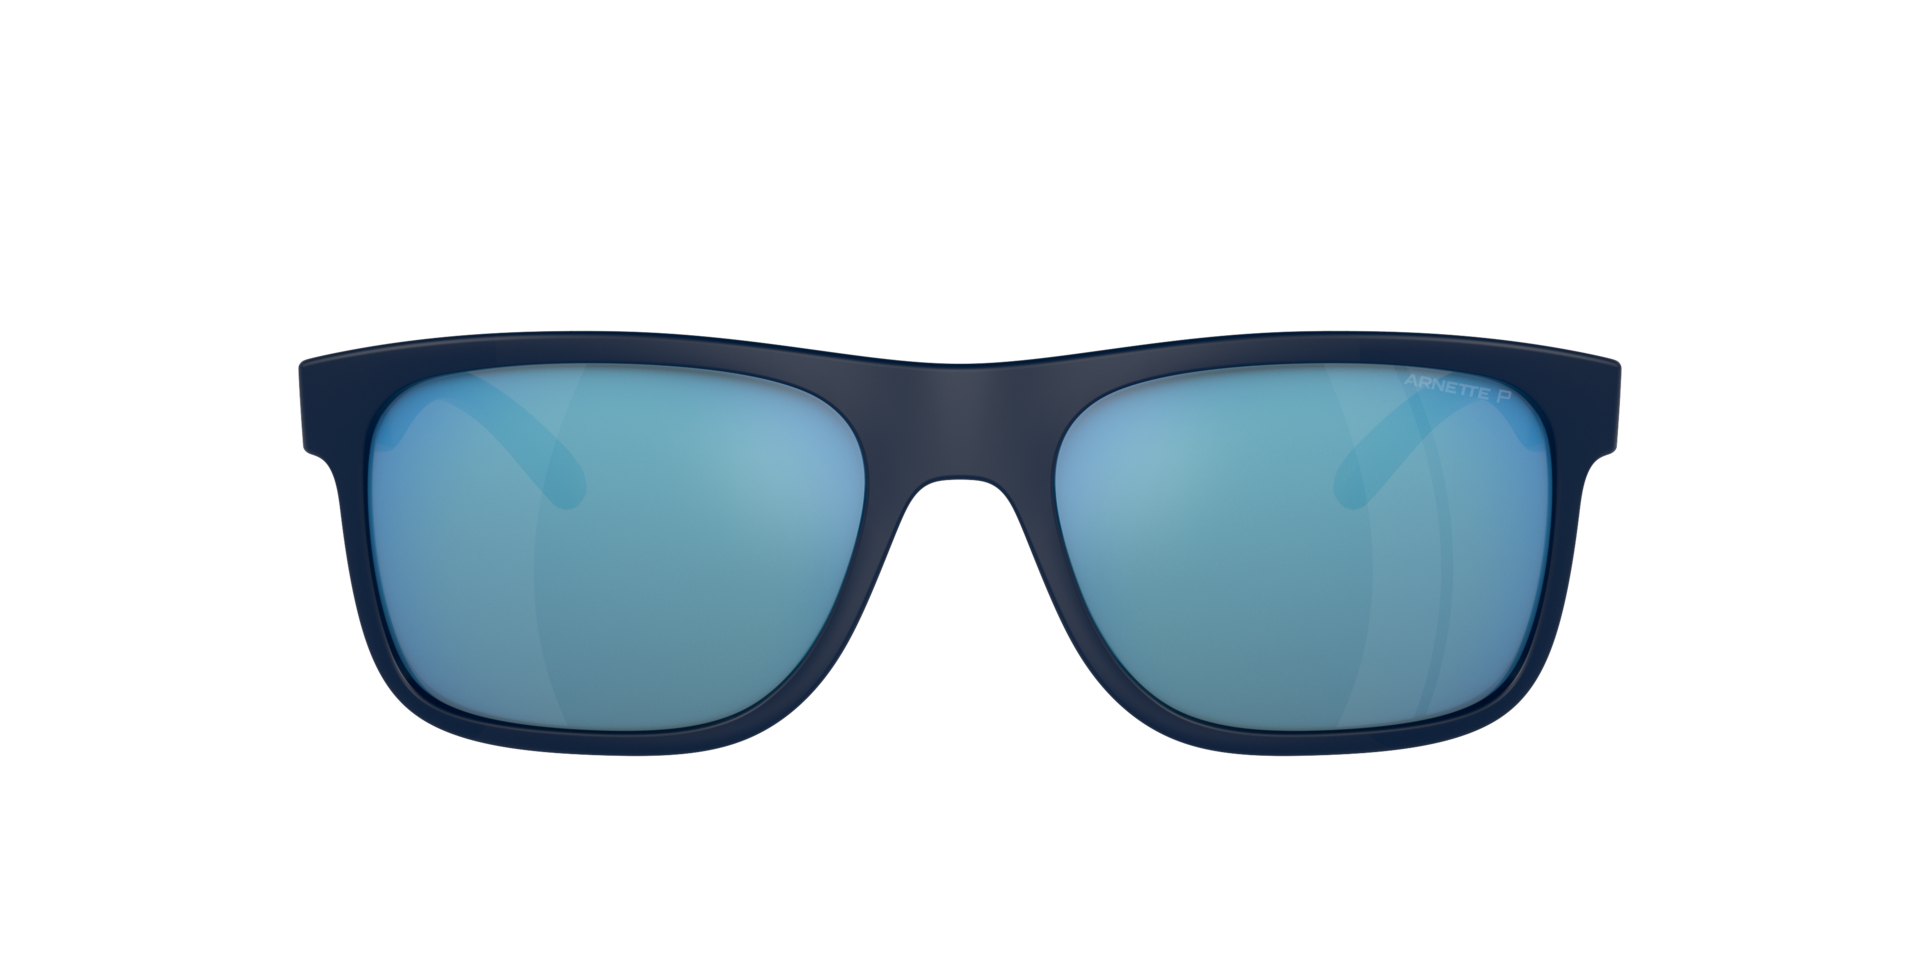 Das Bild zeigt die Sonnenbrille AN4341 275422 von der Marke Arnette in blau/schwarz.